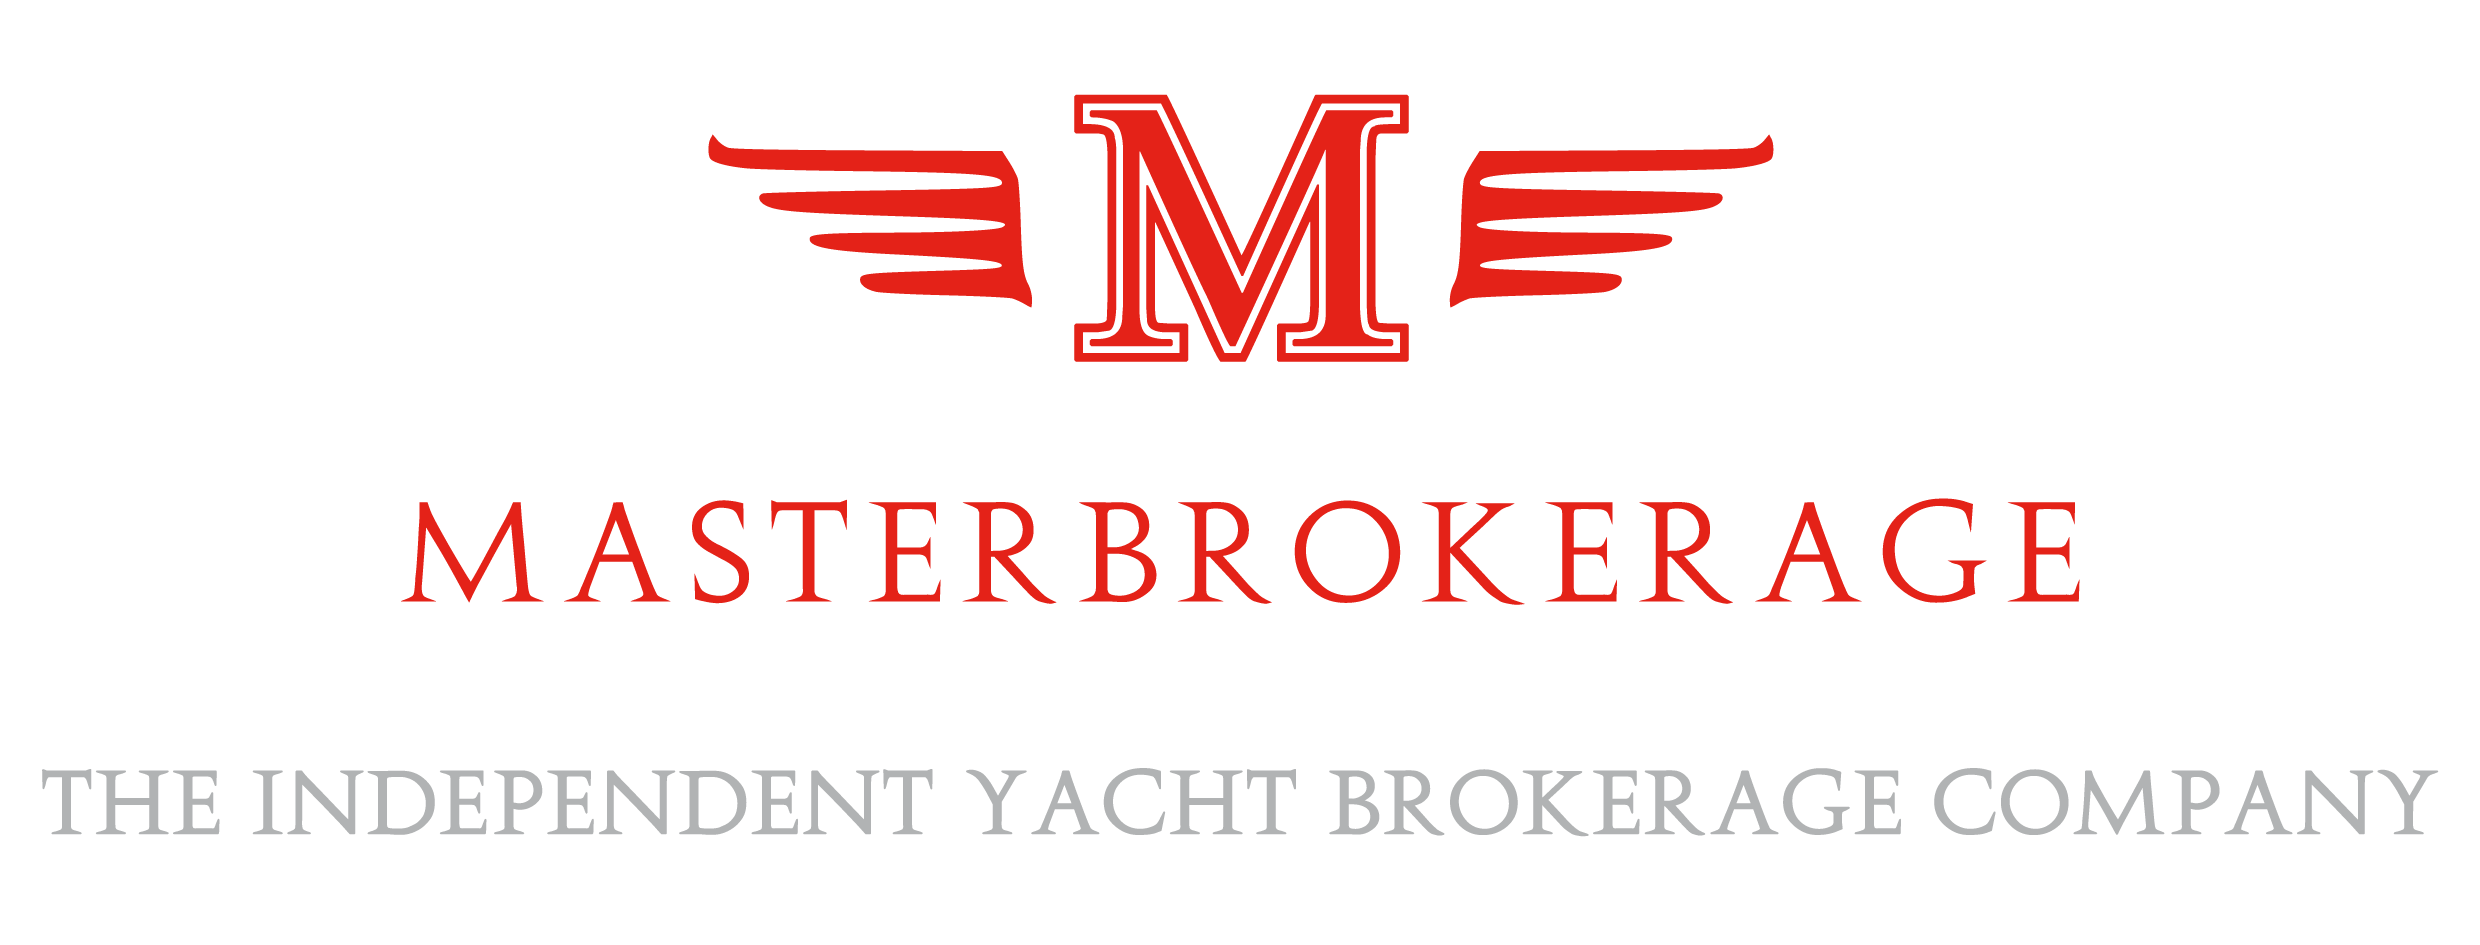 Логотип Master Brokerage srl